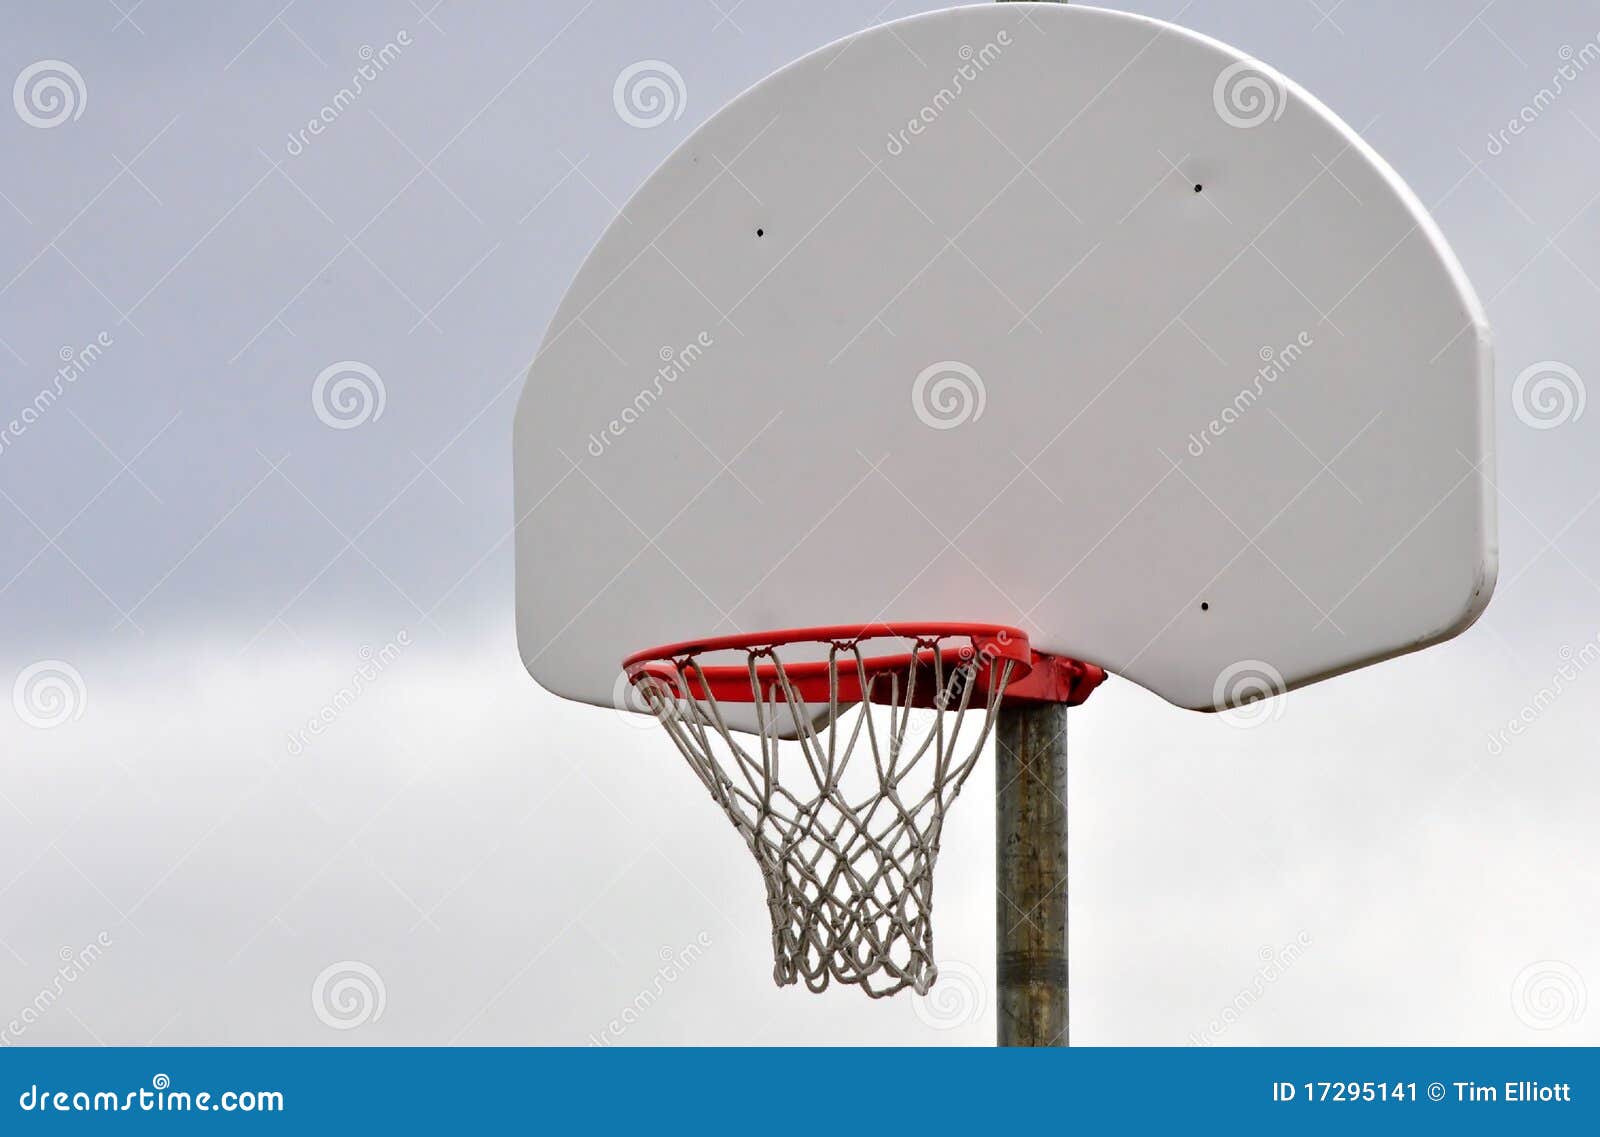 basketball net and backboard